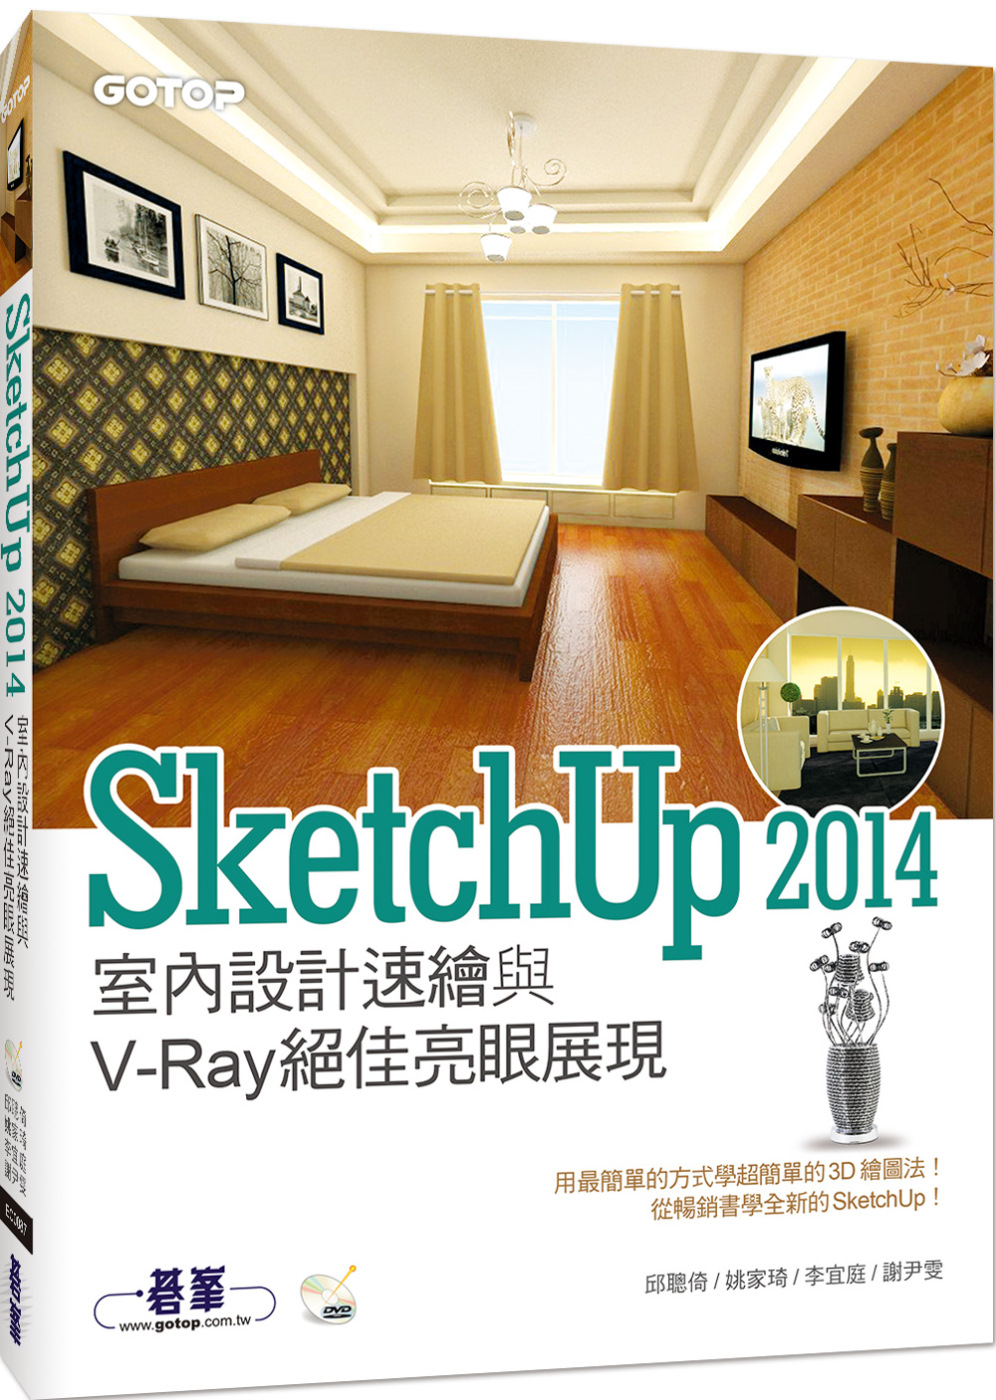 SketchUp 2014室內設計速繪與V-Ray絕佳亮眼展...